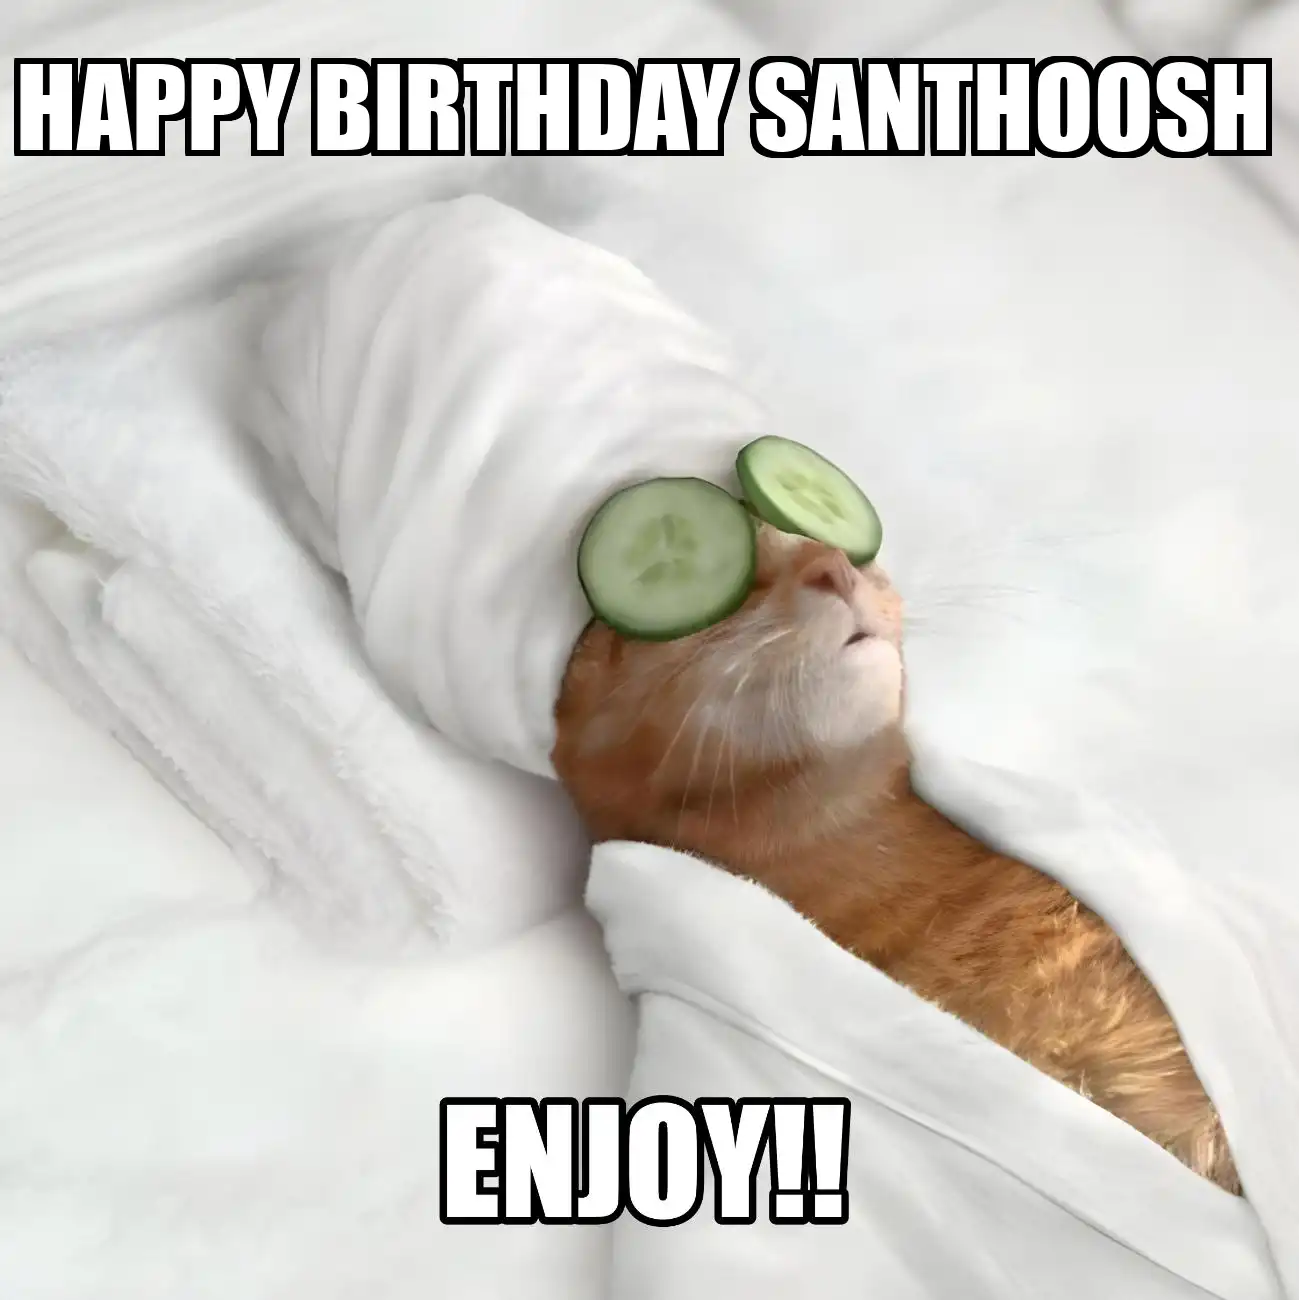 Happy Birthday Santhoosh Enjoy Cat Meme